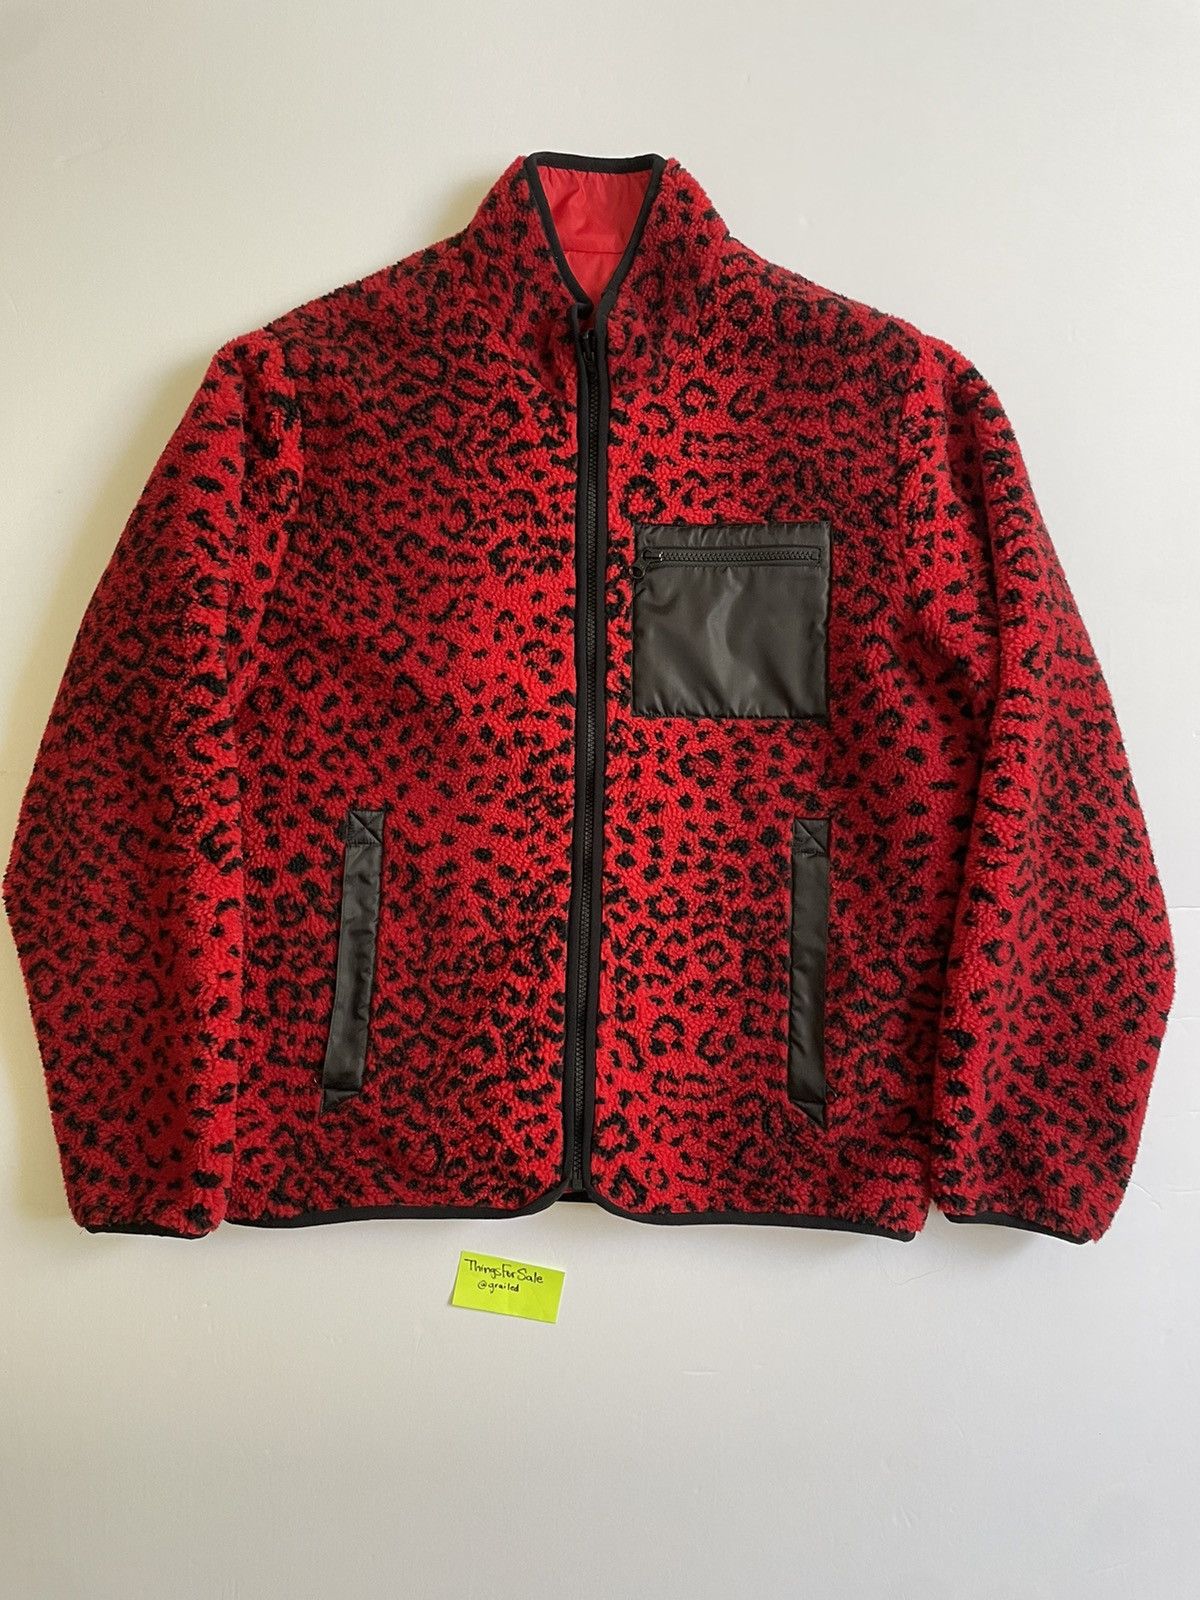 Supreme Leopard Jacket | Grailed